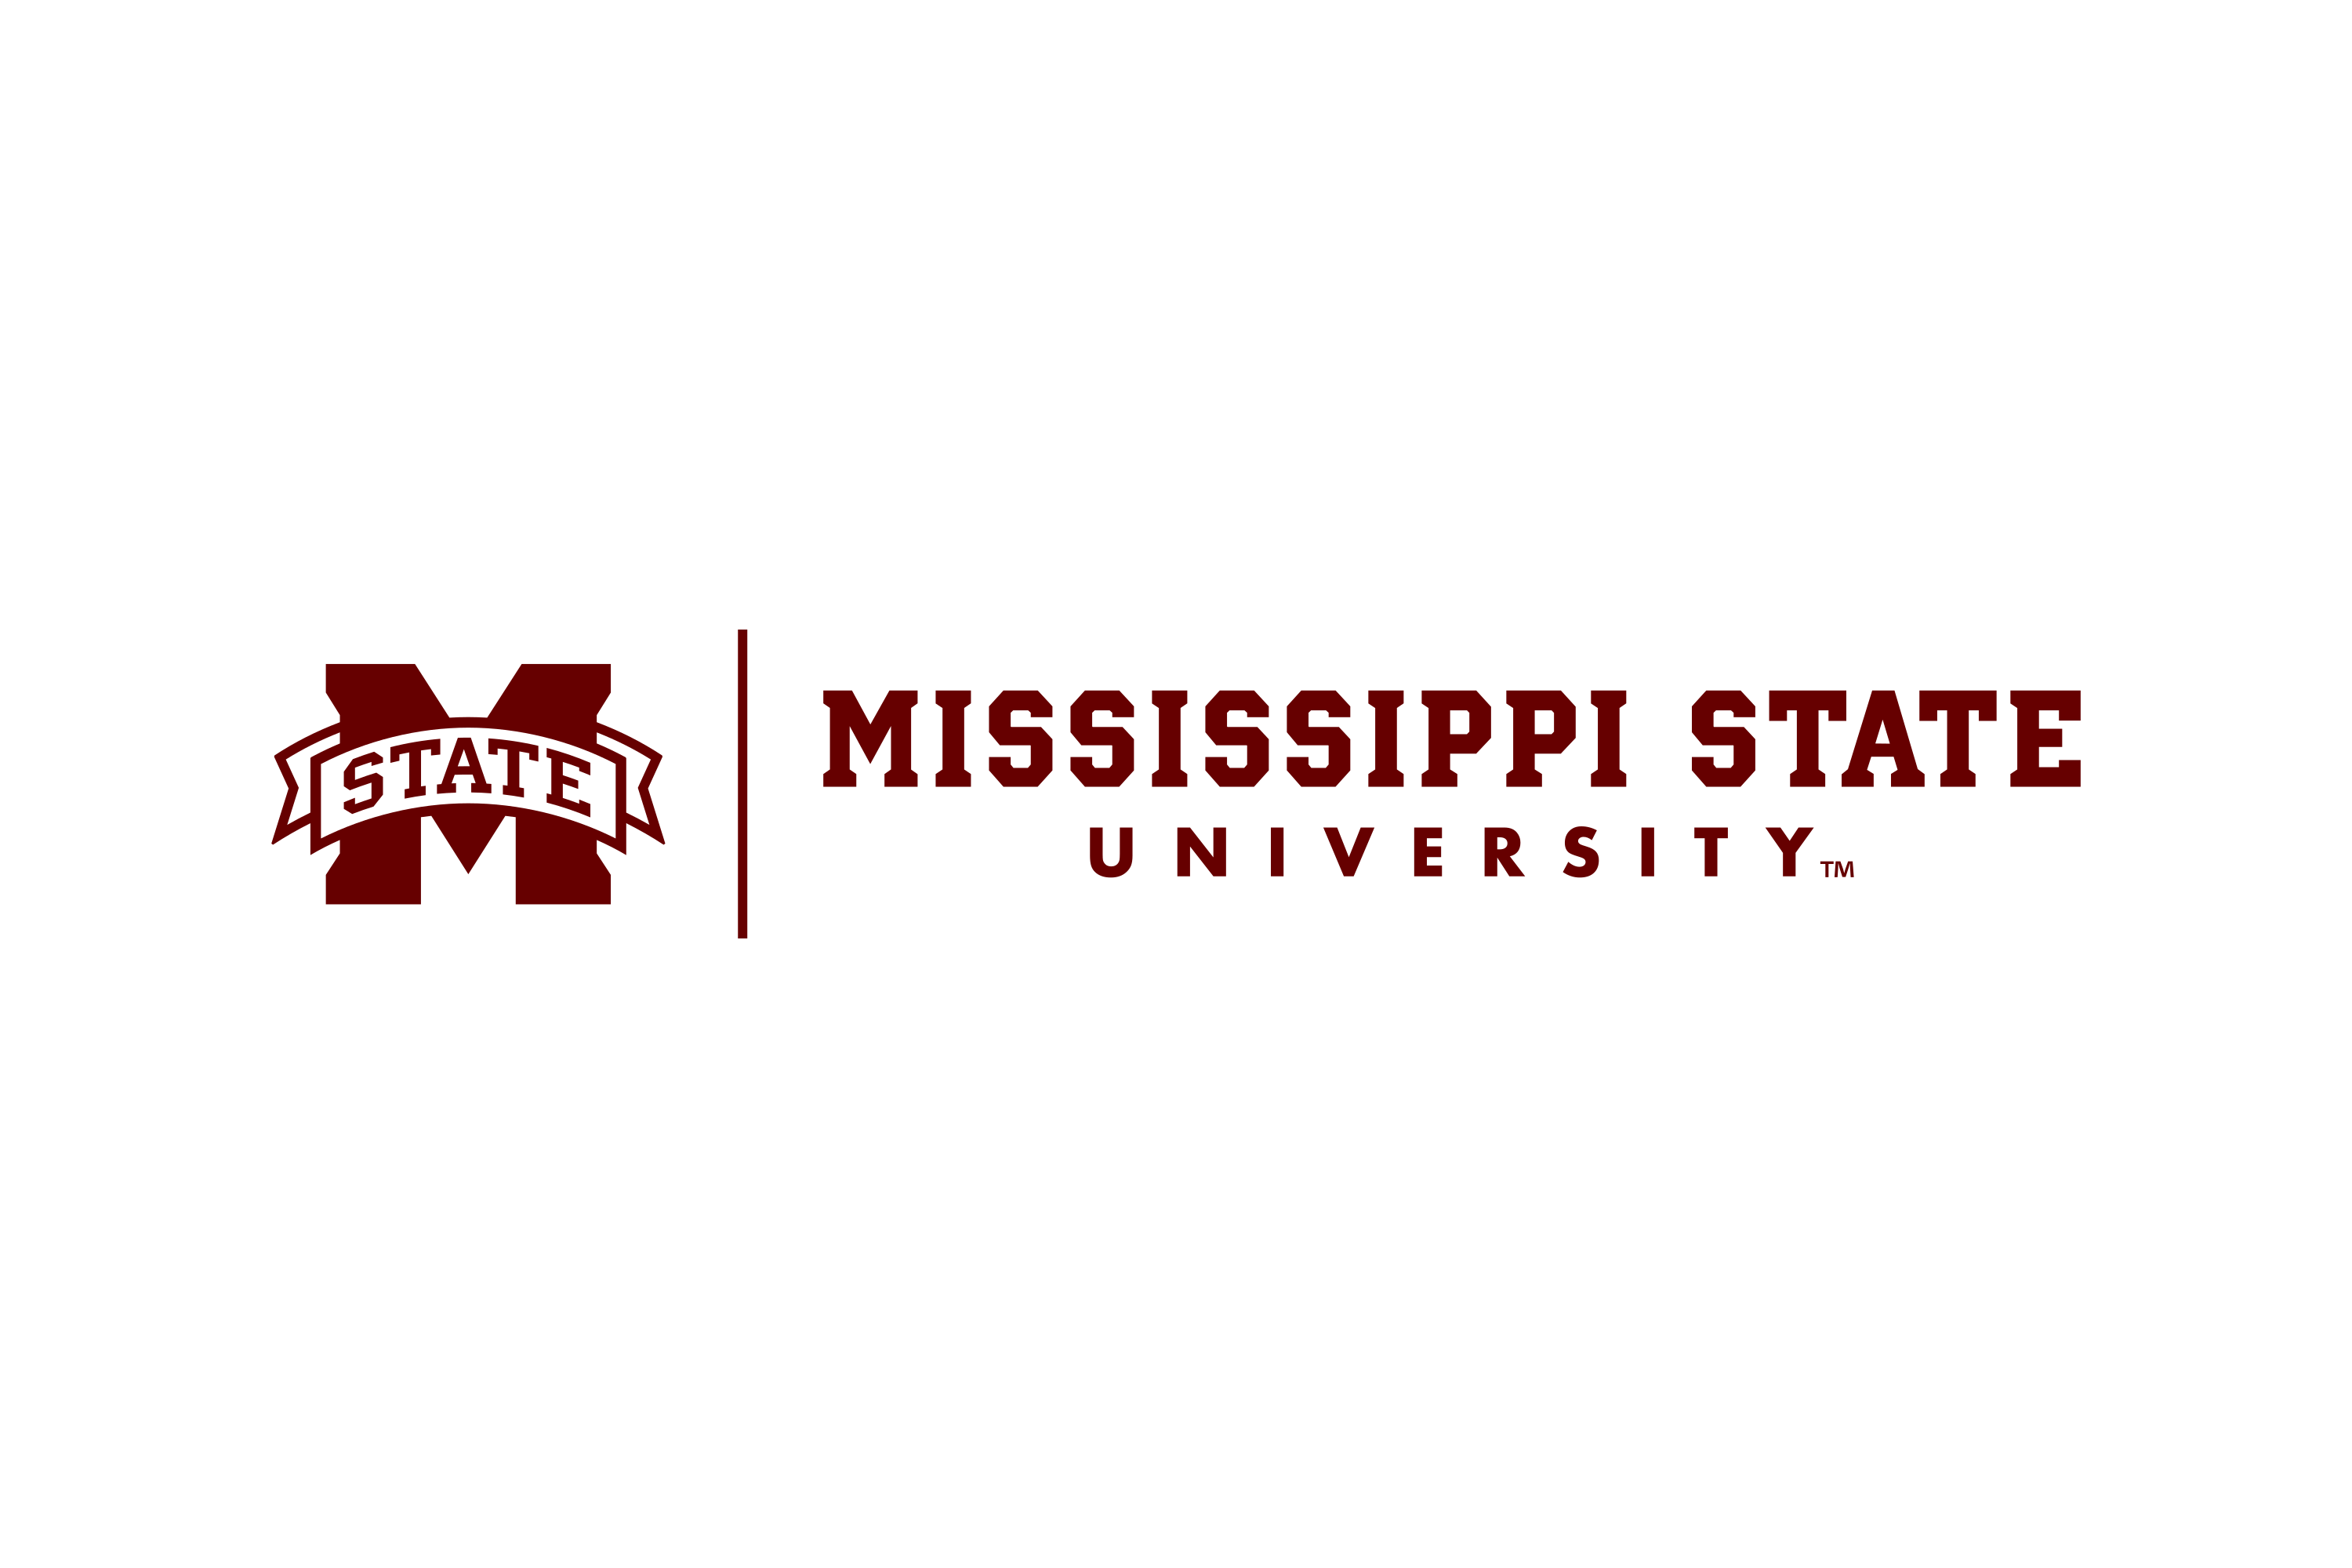 Laden Sie das Logo der Mississippi State University (MSU) als SVG-Vektor oder PNG herunter ...